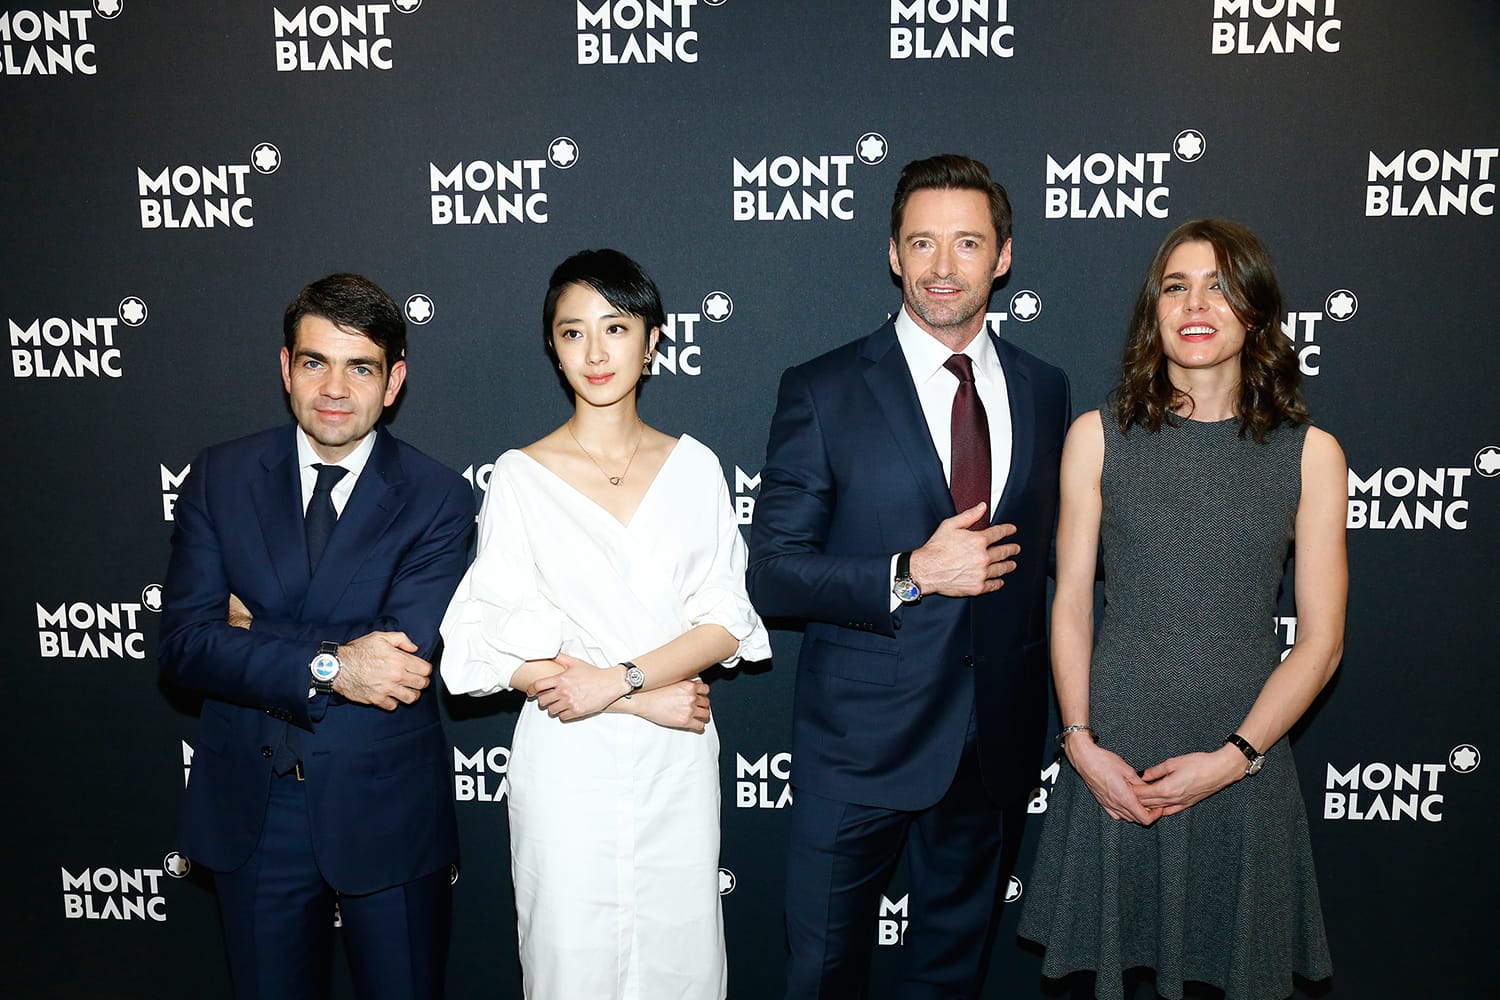 Markenbotschafter Hugh Jackman, Charlotte Casiraghi, Guey Lun Mei und Montblanc CEO Jérôme Lambert feiern den 110. Geburtstag von Montblanc.